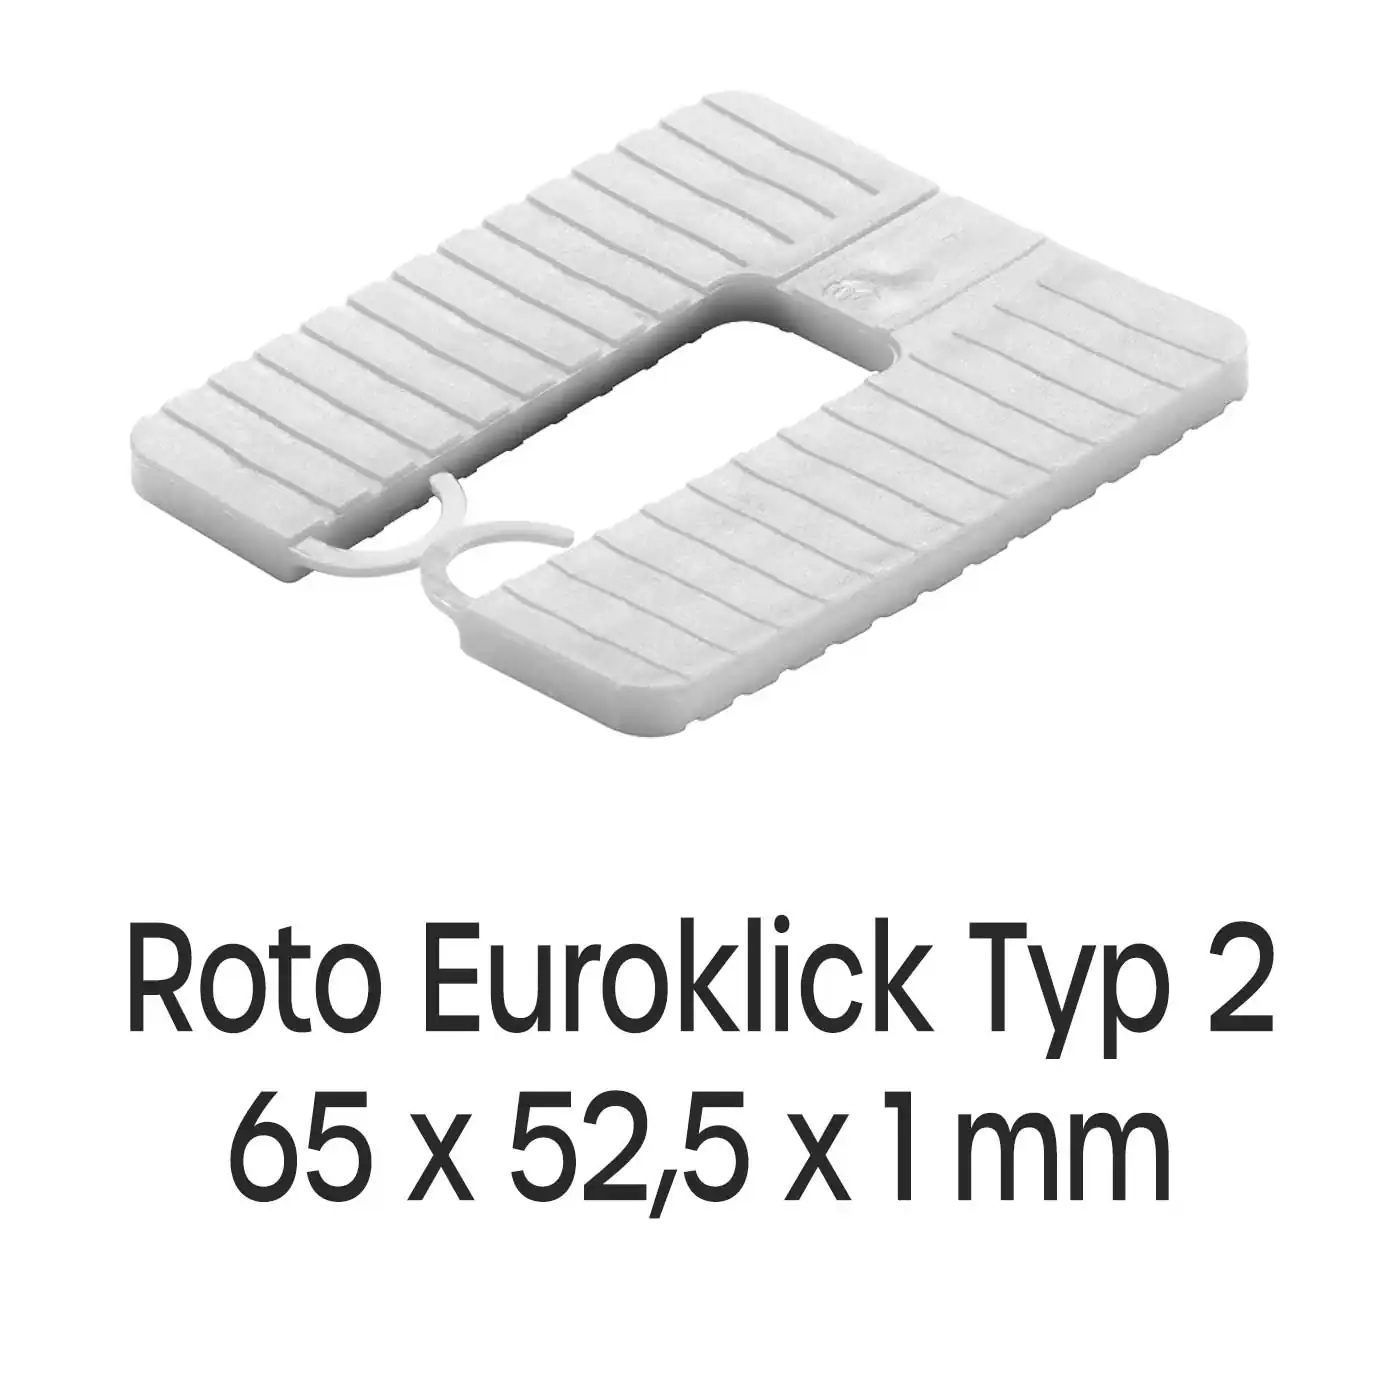 Distanzplatten Roto Euroklick Typ 2 65 x 52,5 x 1 mm 1000 Stück